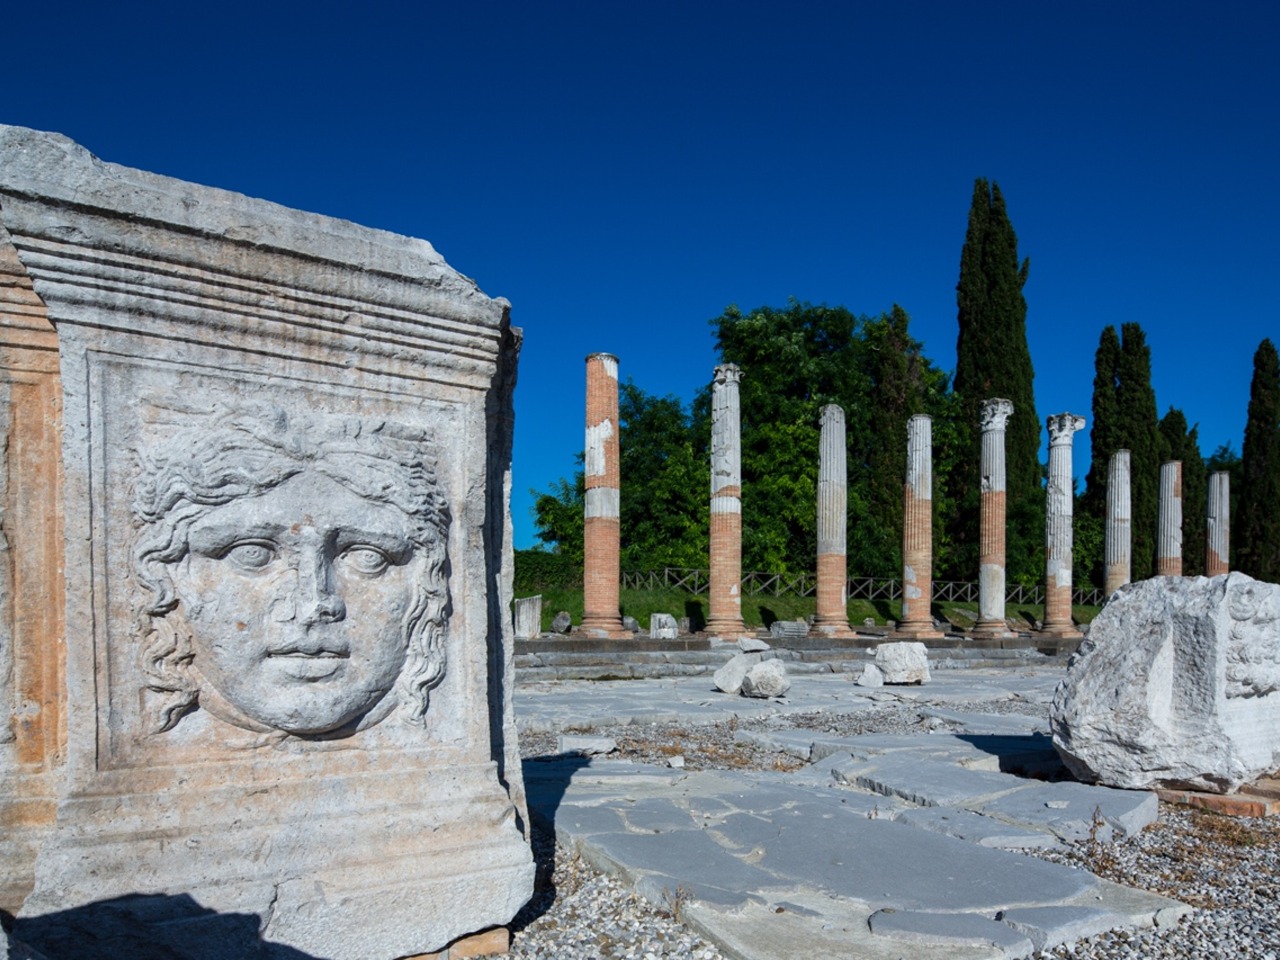 “Второй Рим” Аквилея. Секреты античного мегаполиса | Цена 120€, отзывы, описание экскурсии